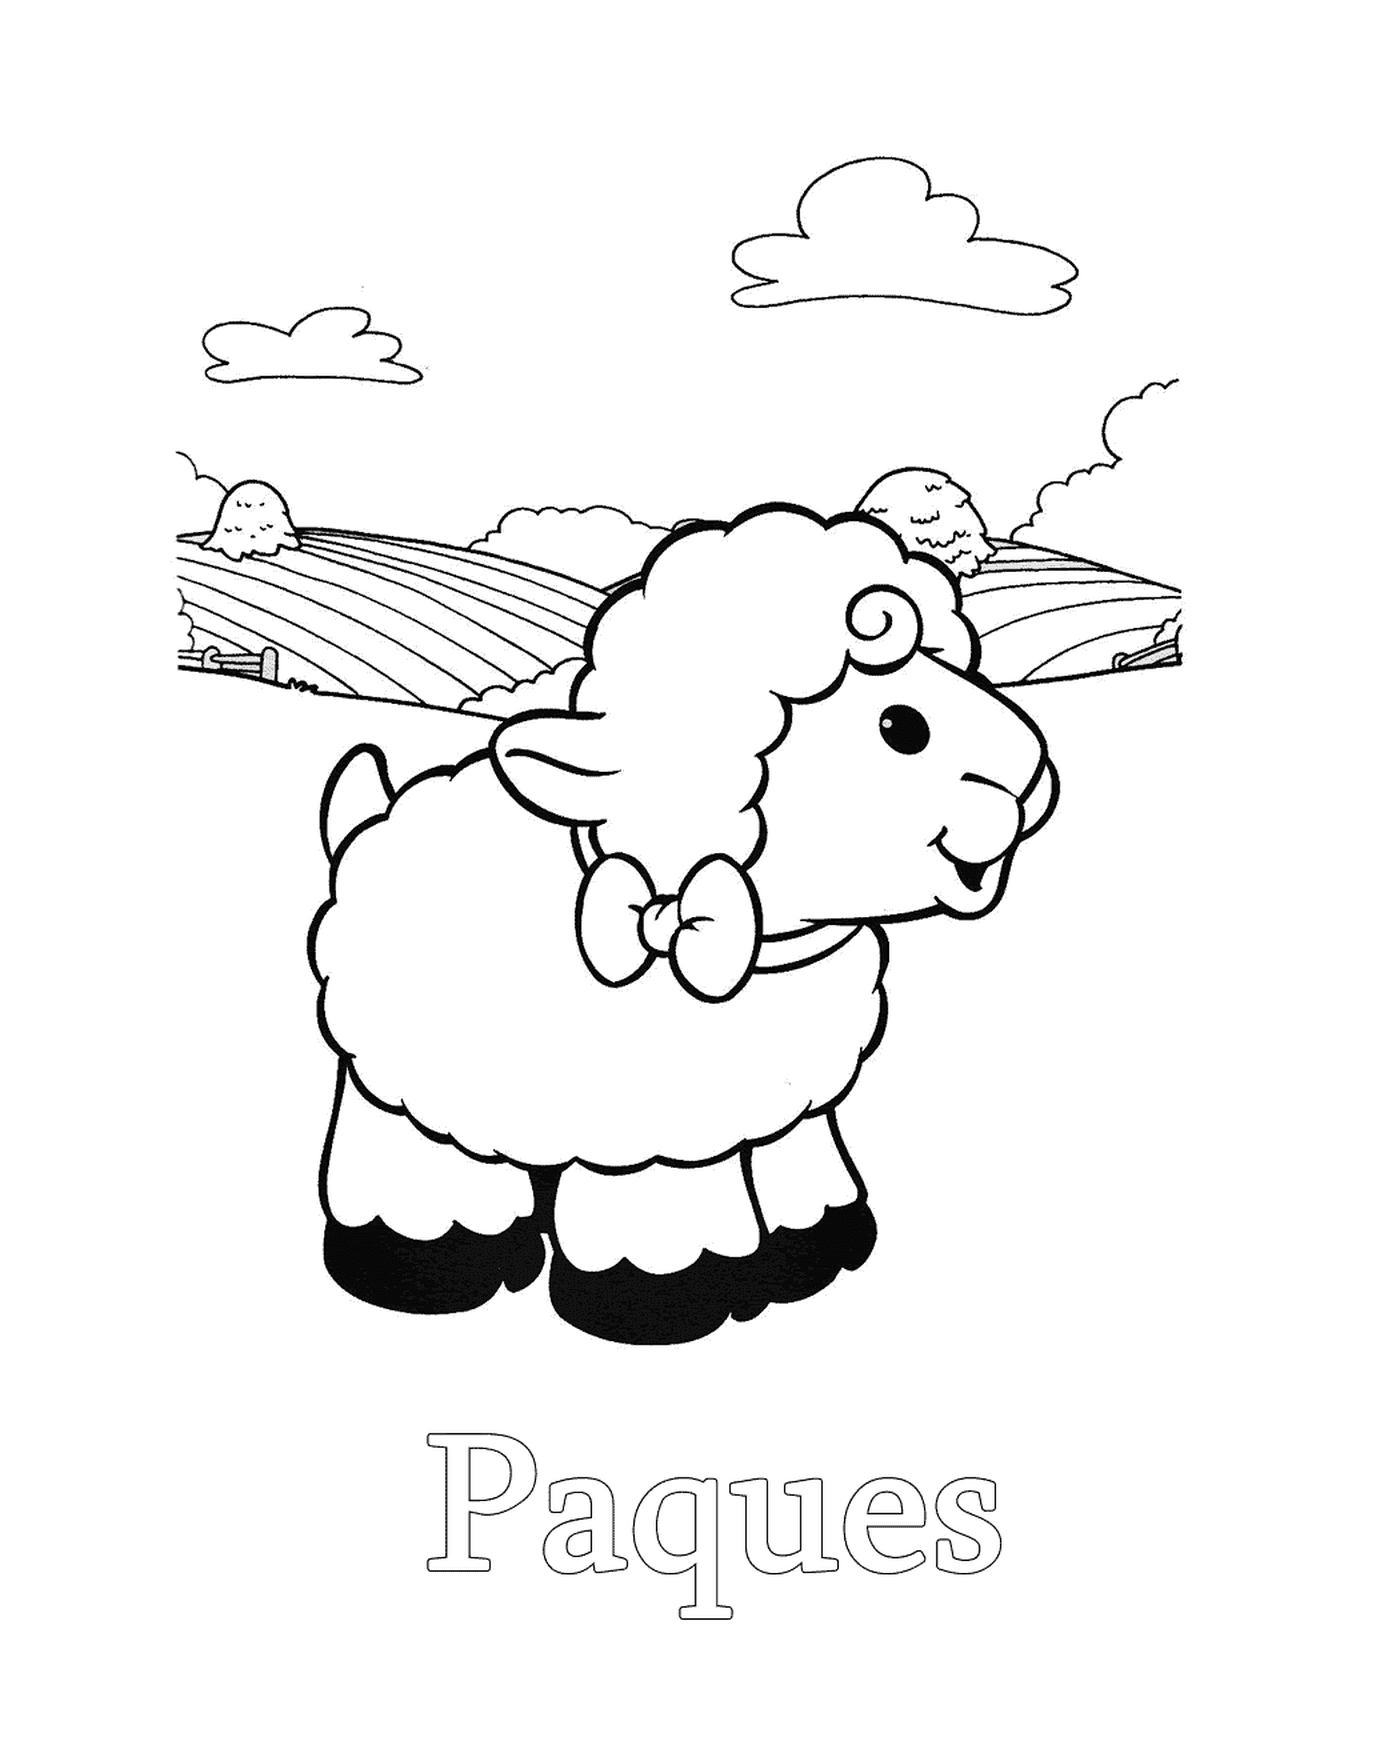  Овцы перед полями 